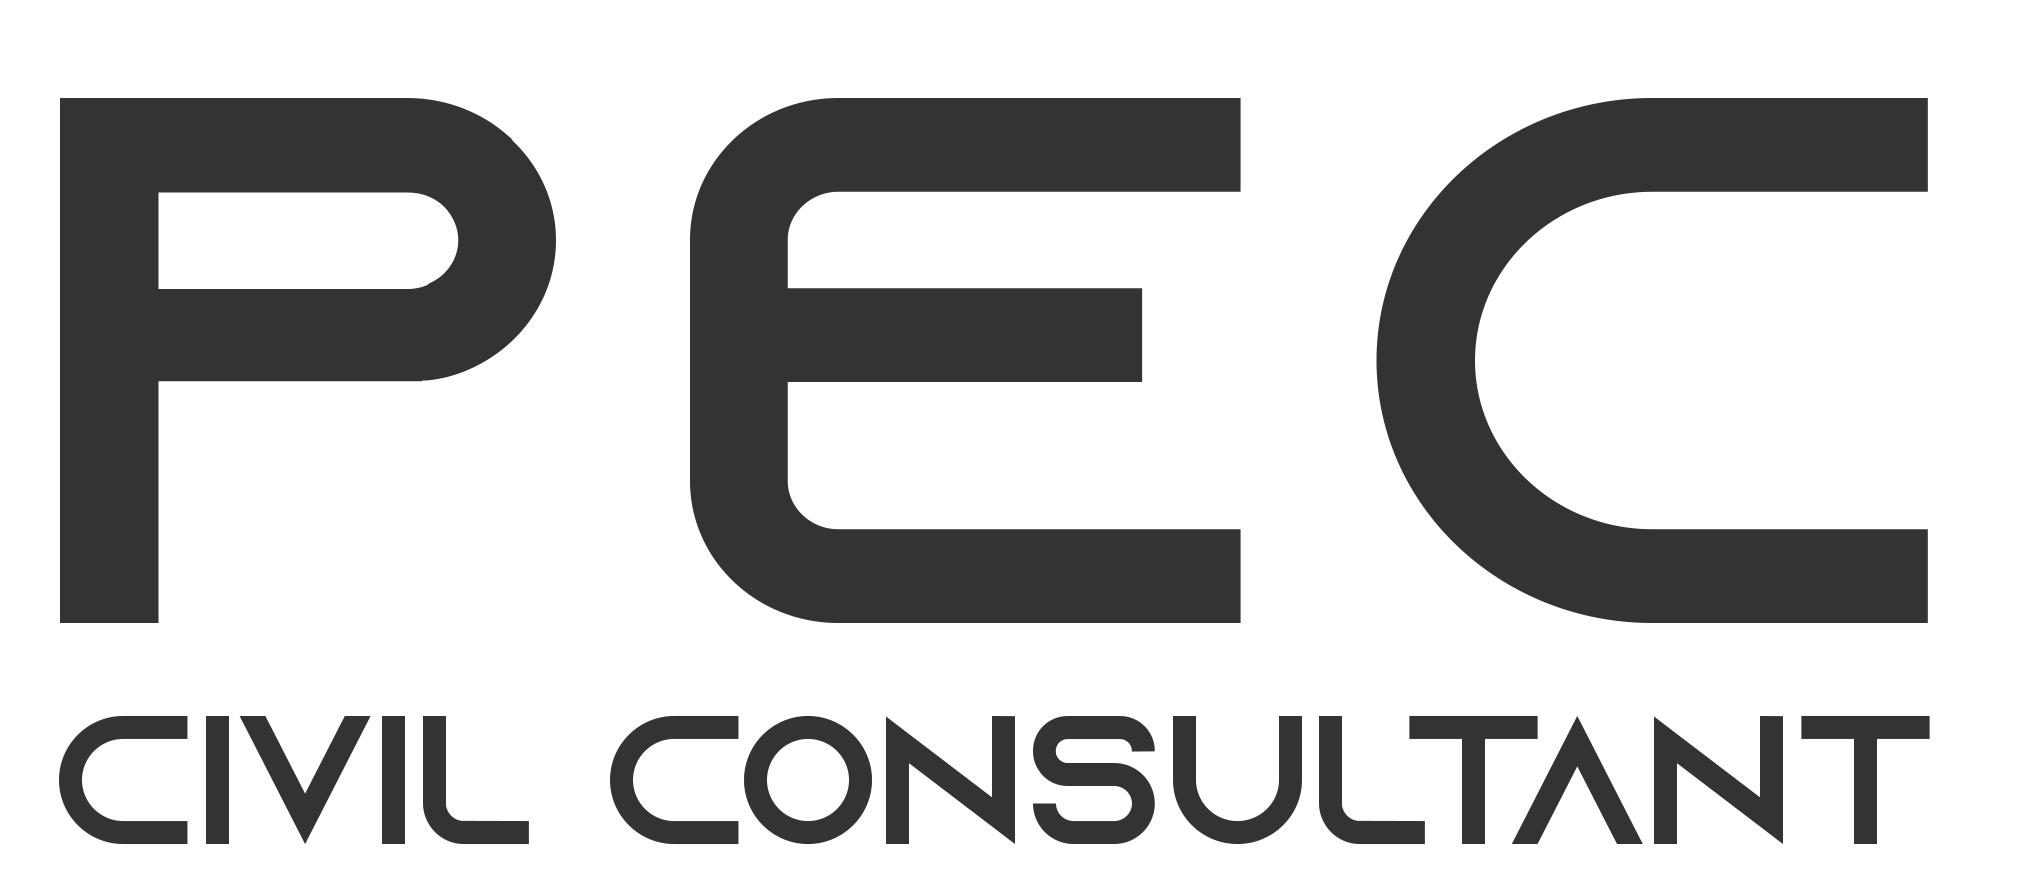 Pec Civil Consultant Pte. Ltd. company logo